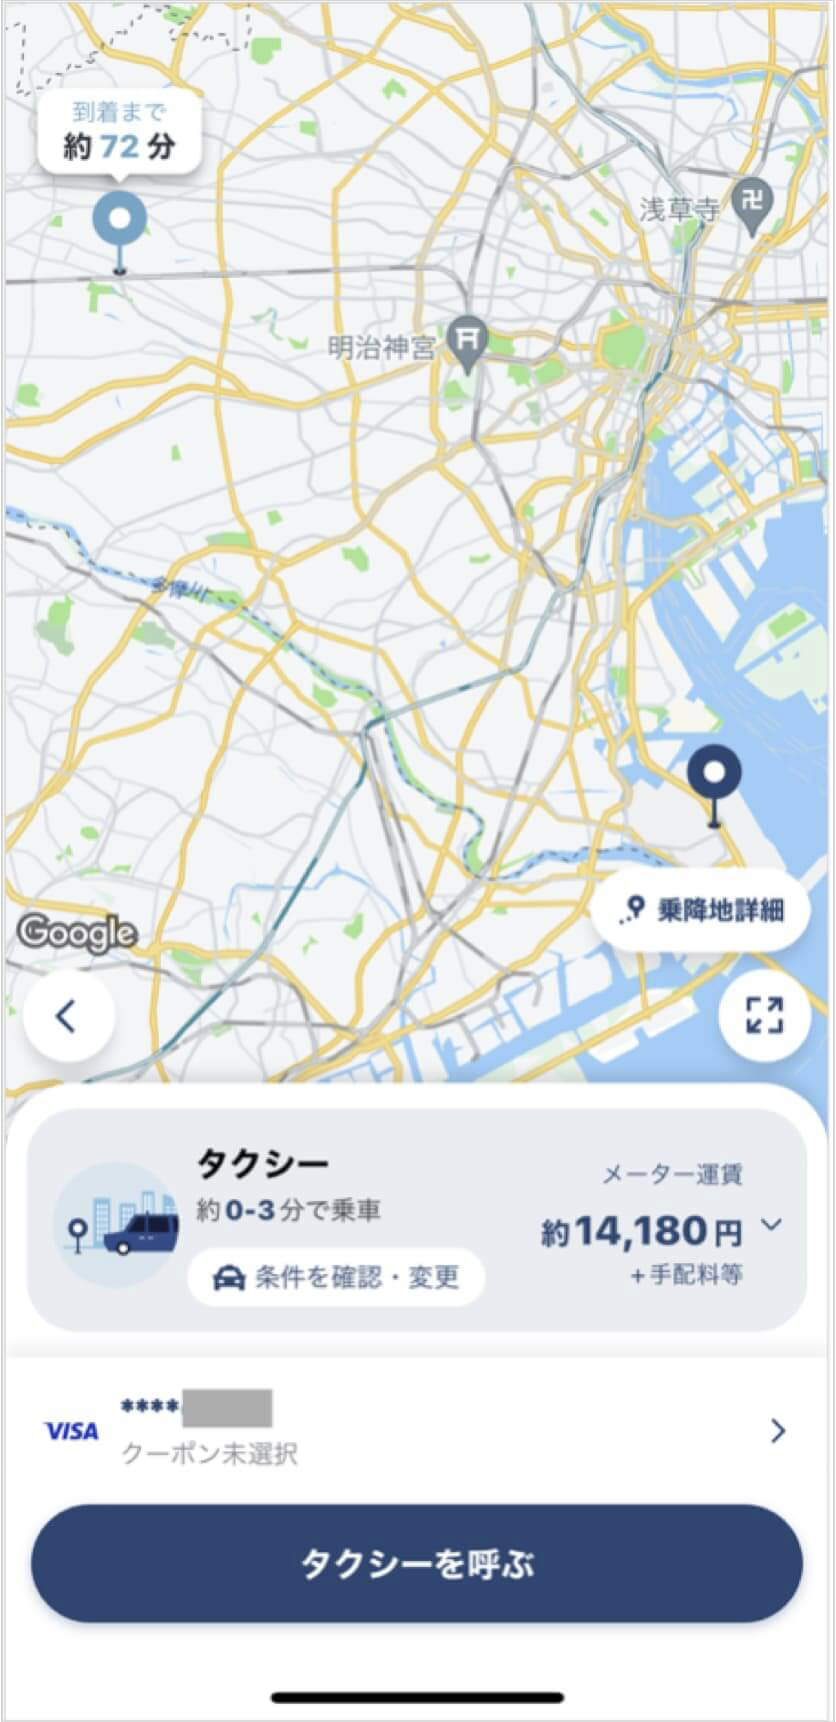 羽田空港から吉祥寺までのタクシー料金・所要時間まとめ